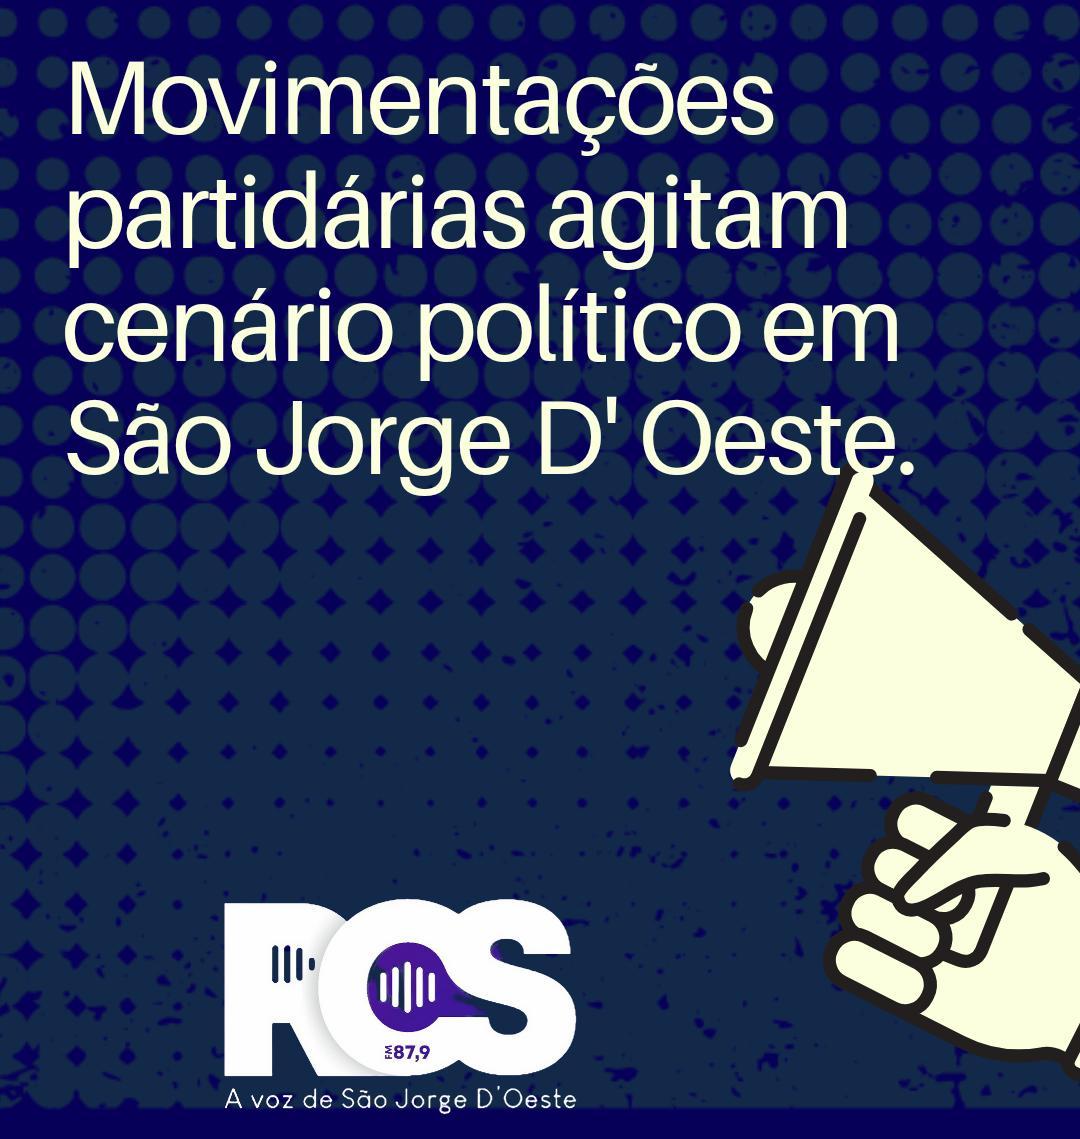 Movimentações partidárias agitam cenário político em São Jorge D' Oeste.